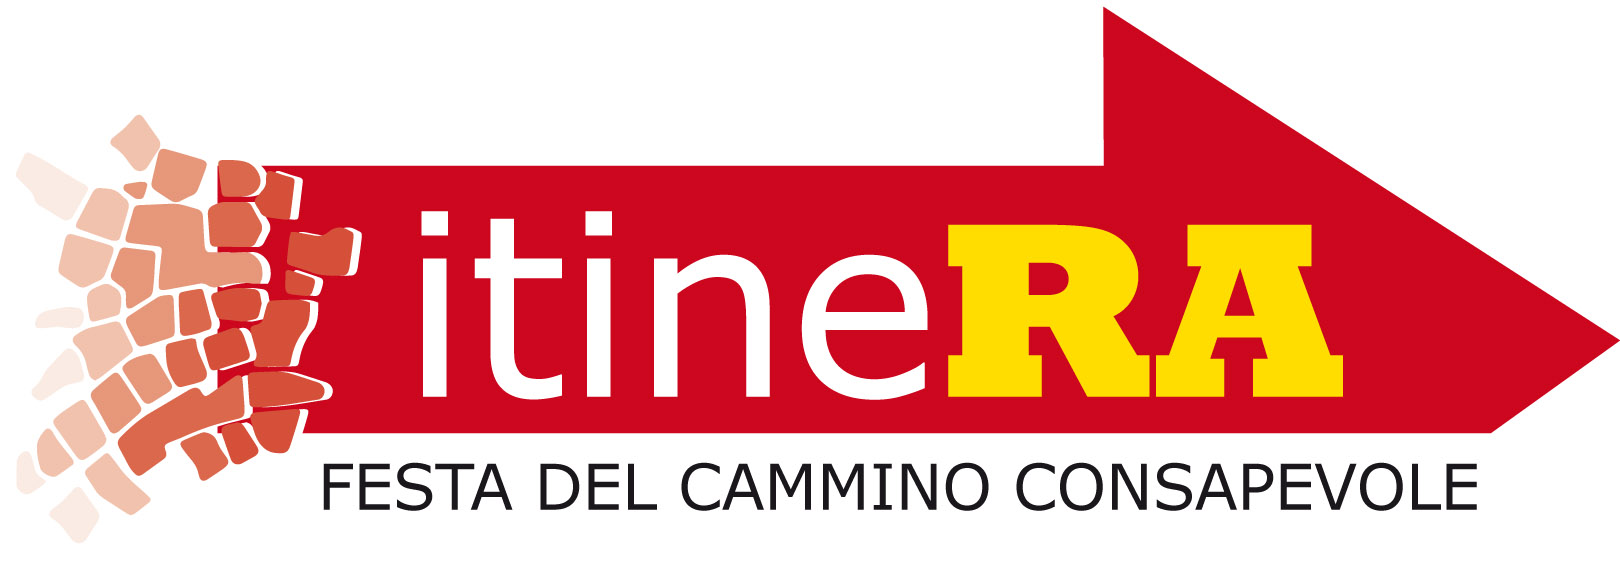 logo Itinera-2